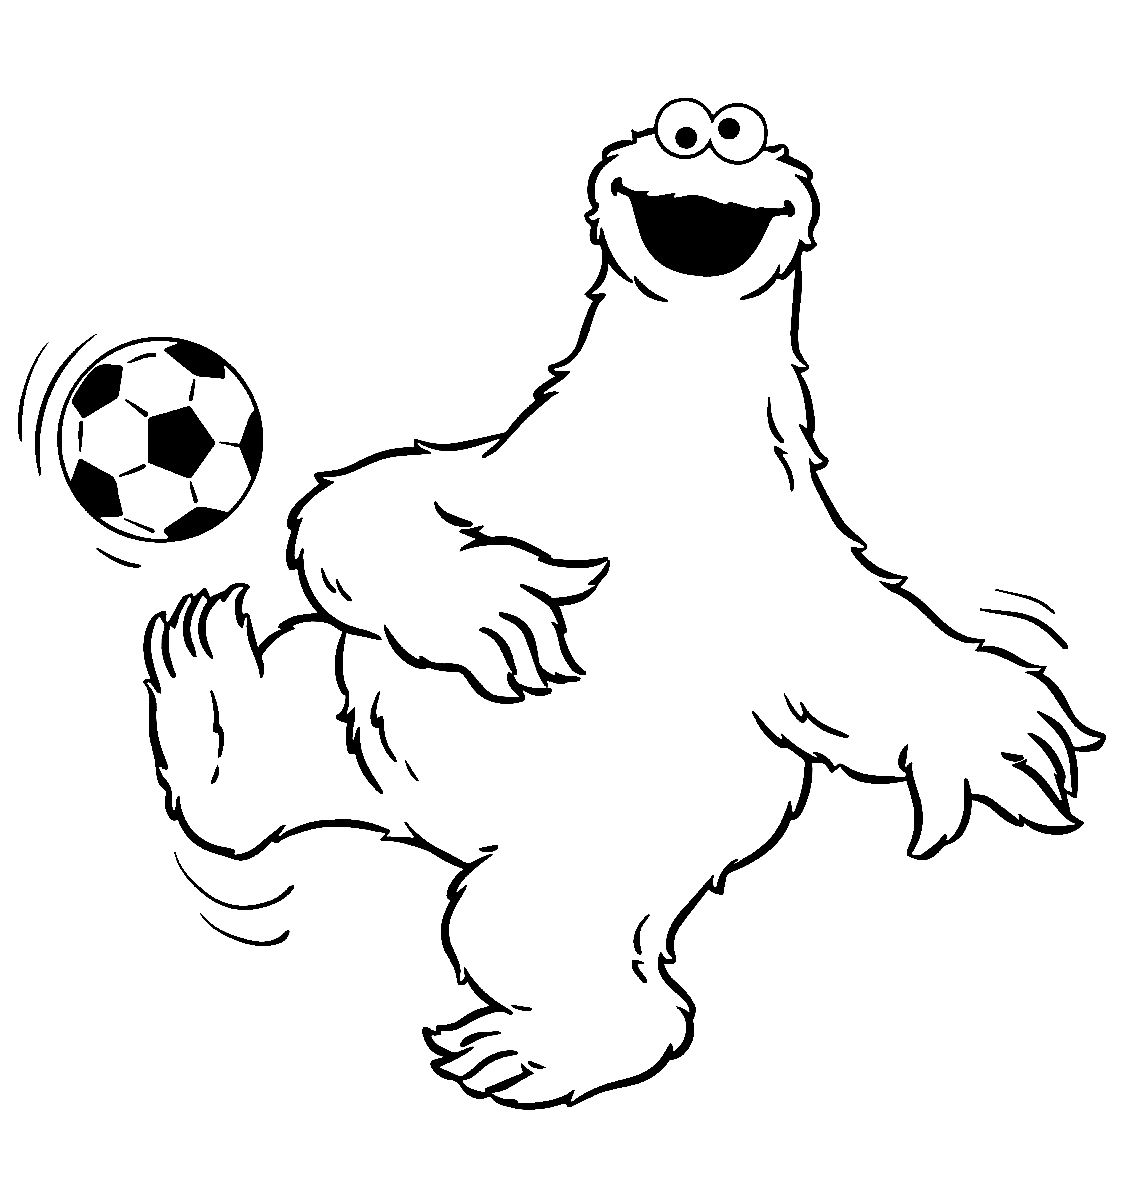 Cookie Monster gioca a calcio da Soccer